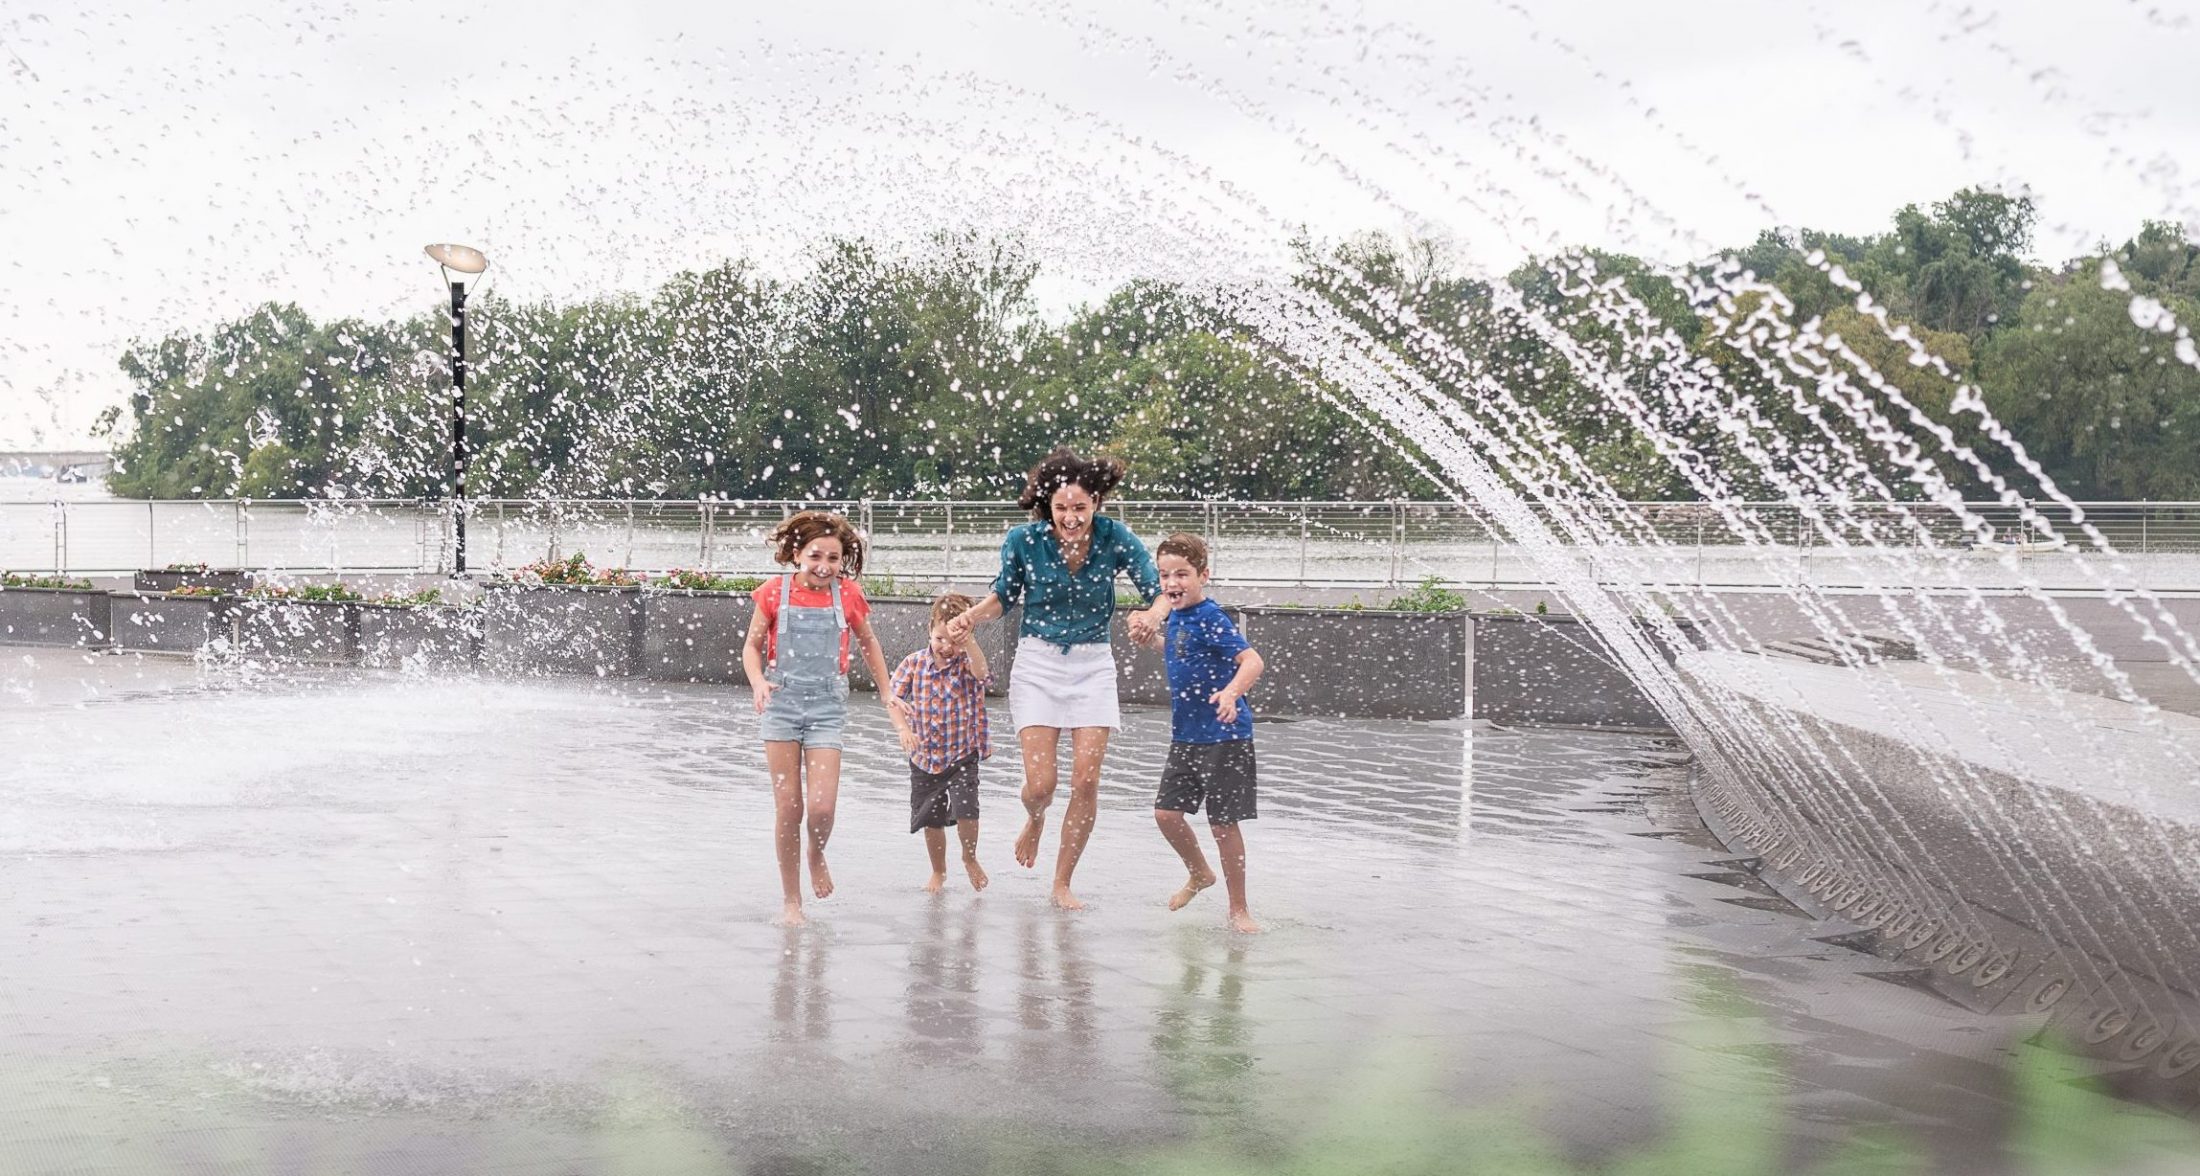 DC widow blog writer Marjorie Brimley runs through fountain with children